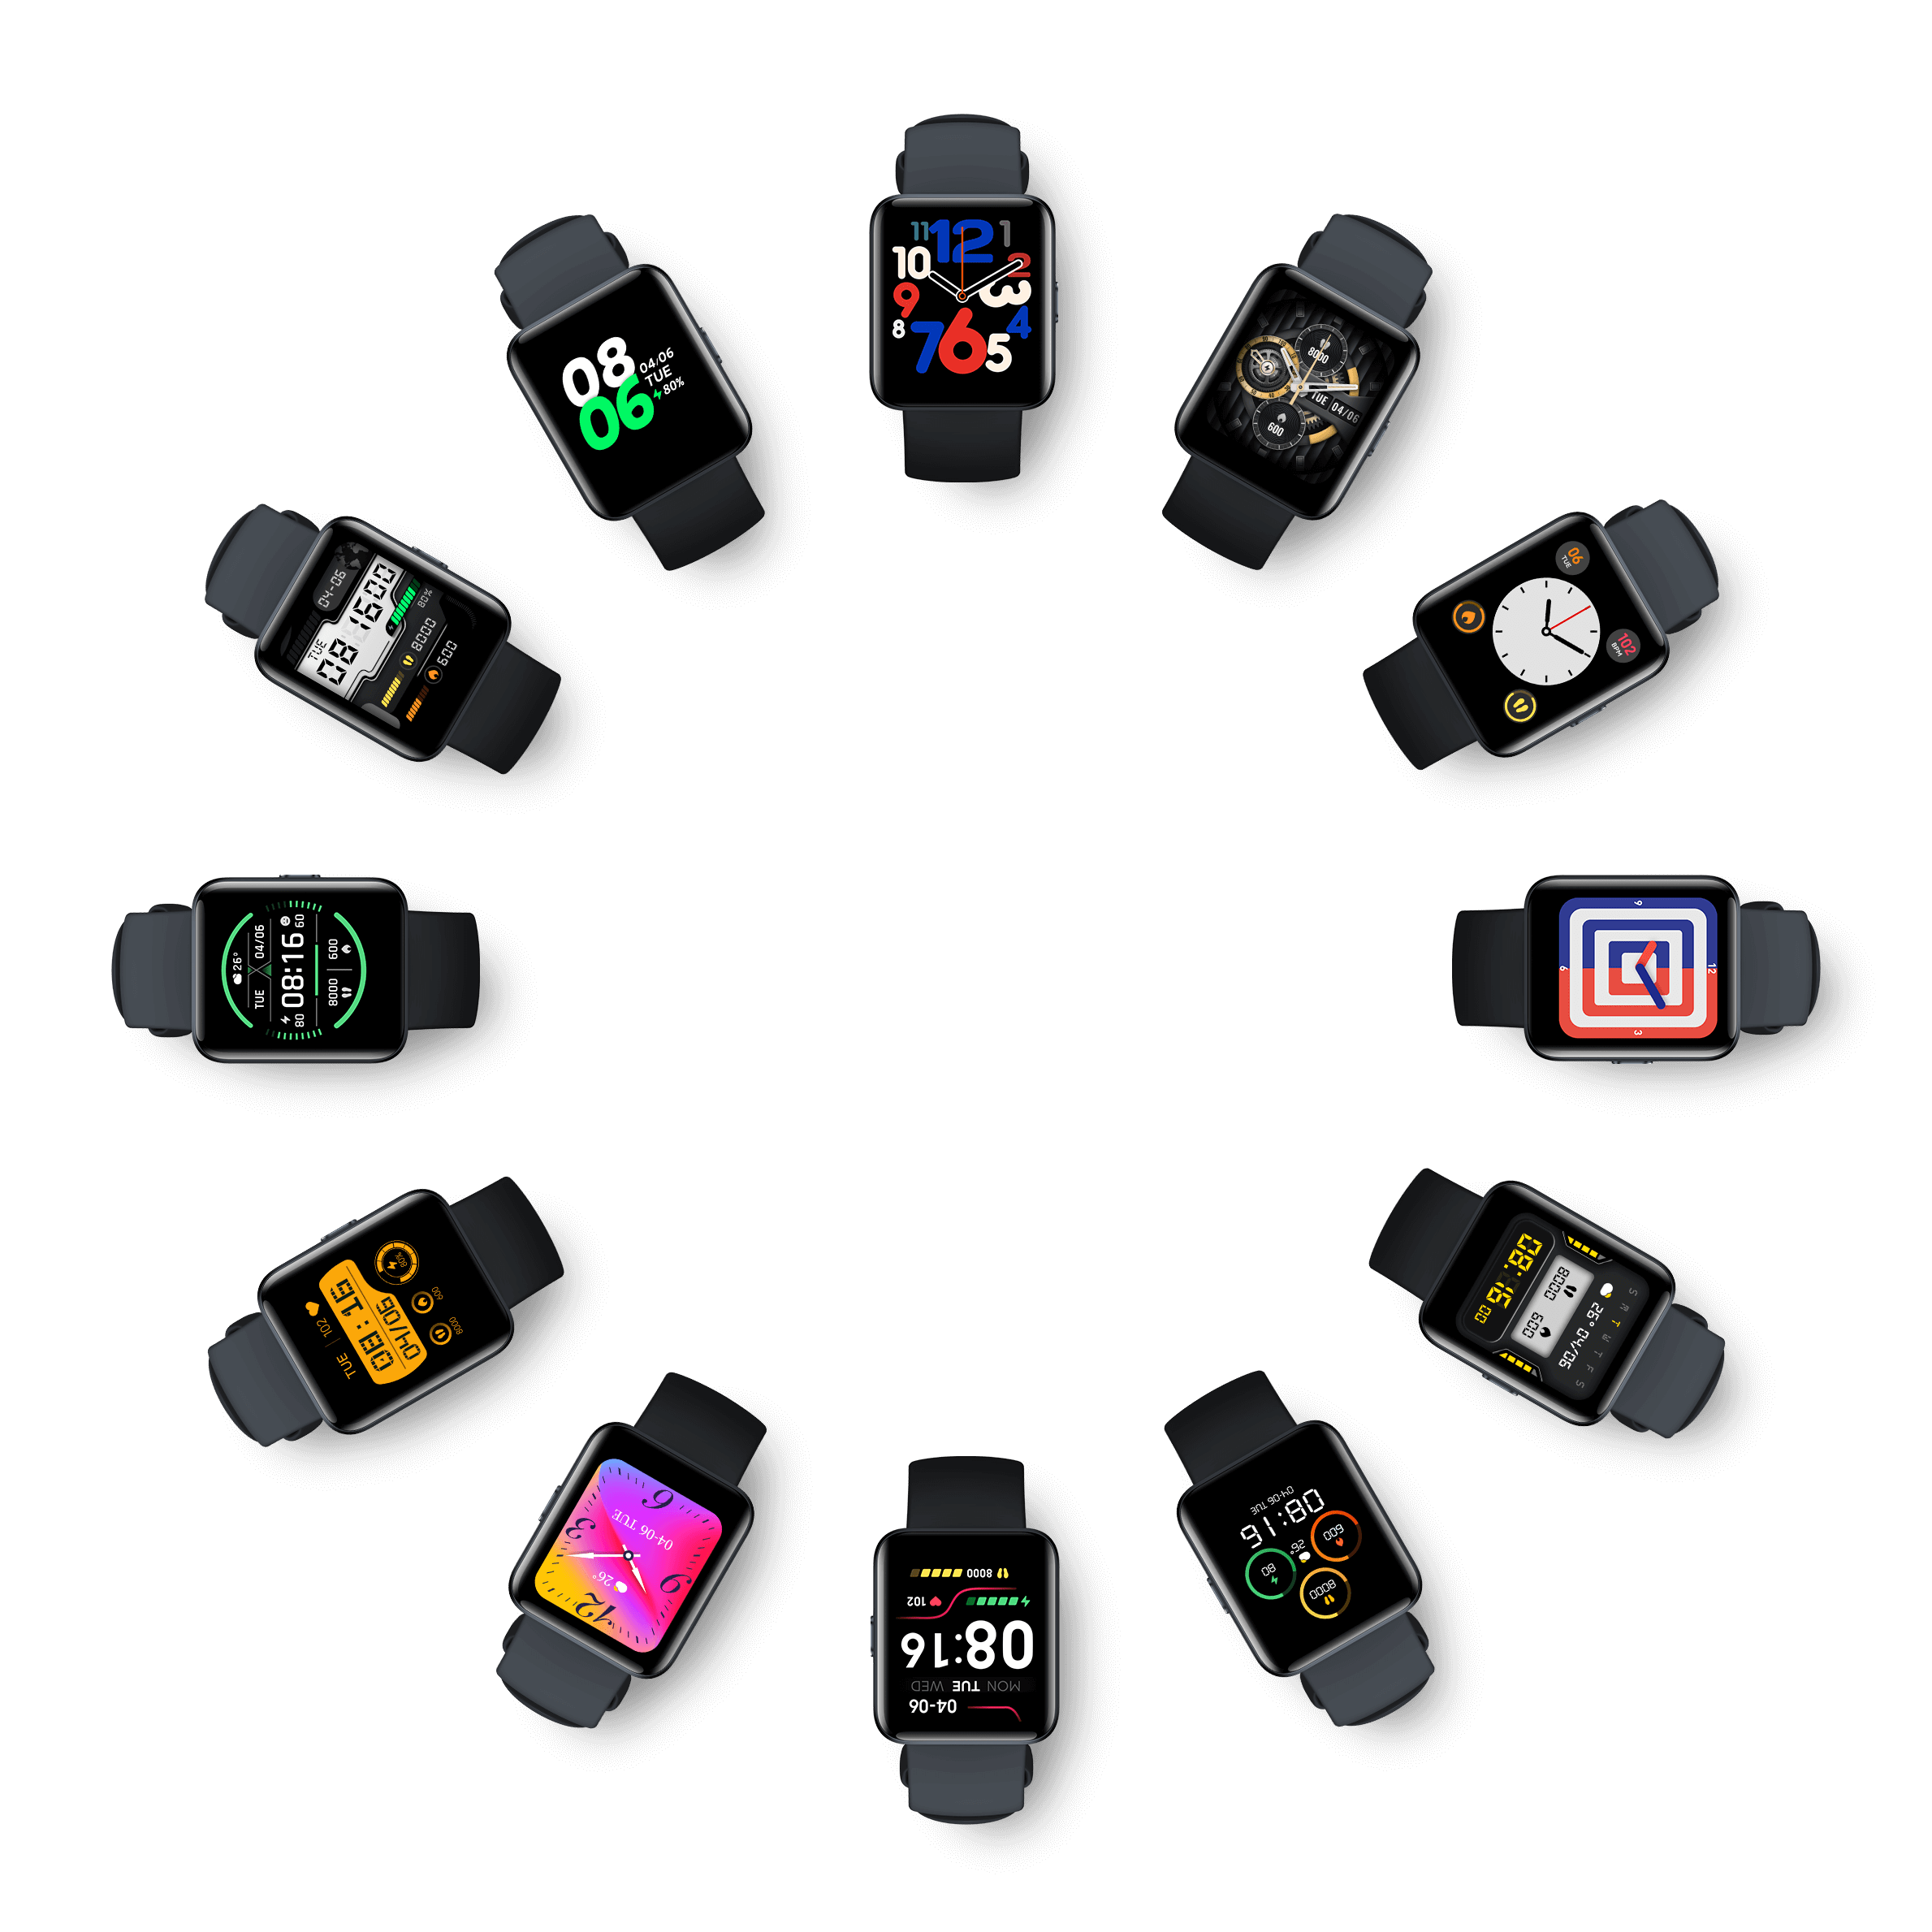 Часы редми отзывы. Смарт часы Redmi watch 2 Lite. Смарт часы Xiaomi редми вотч 2 Лайт. Смарт-часы Xiaomi Redmi watch 2 Lite gl. Март-часы Xiaomi Redmi watch 2 Lite.